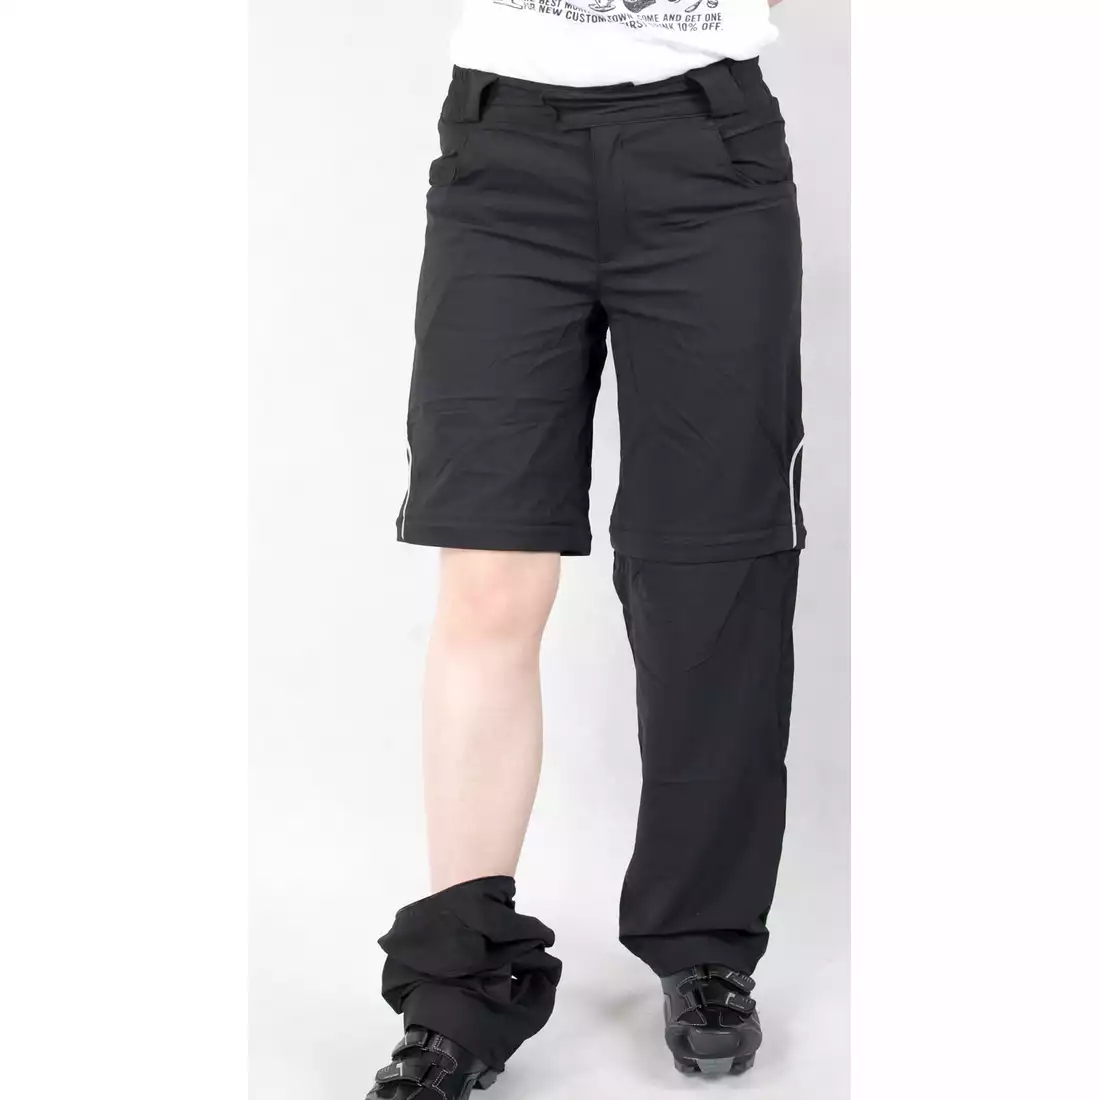 SHIMANO TOURING W'S CONVERTIBLE damskie spodnie rowerowe, odpinane nogawki, czarne, CWPATSMS16WL